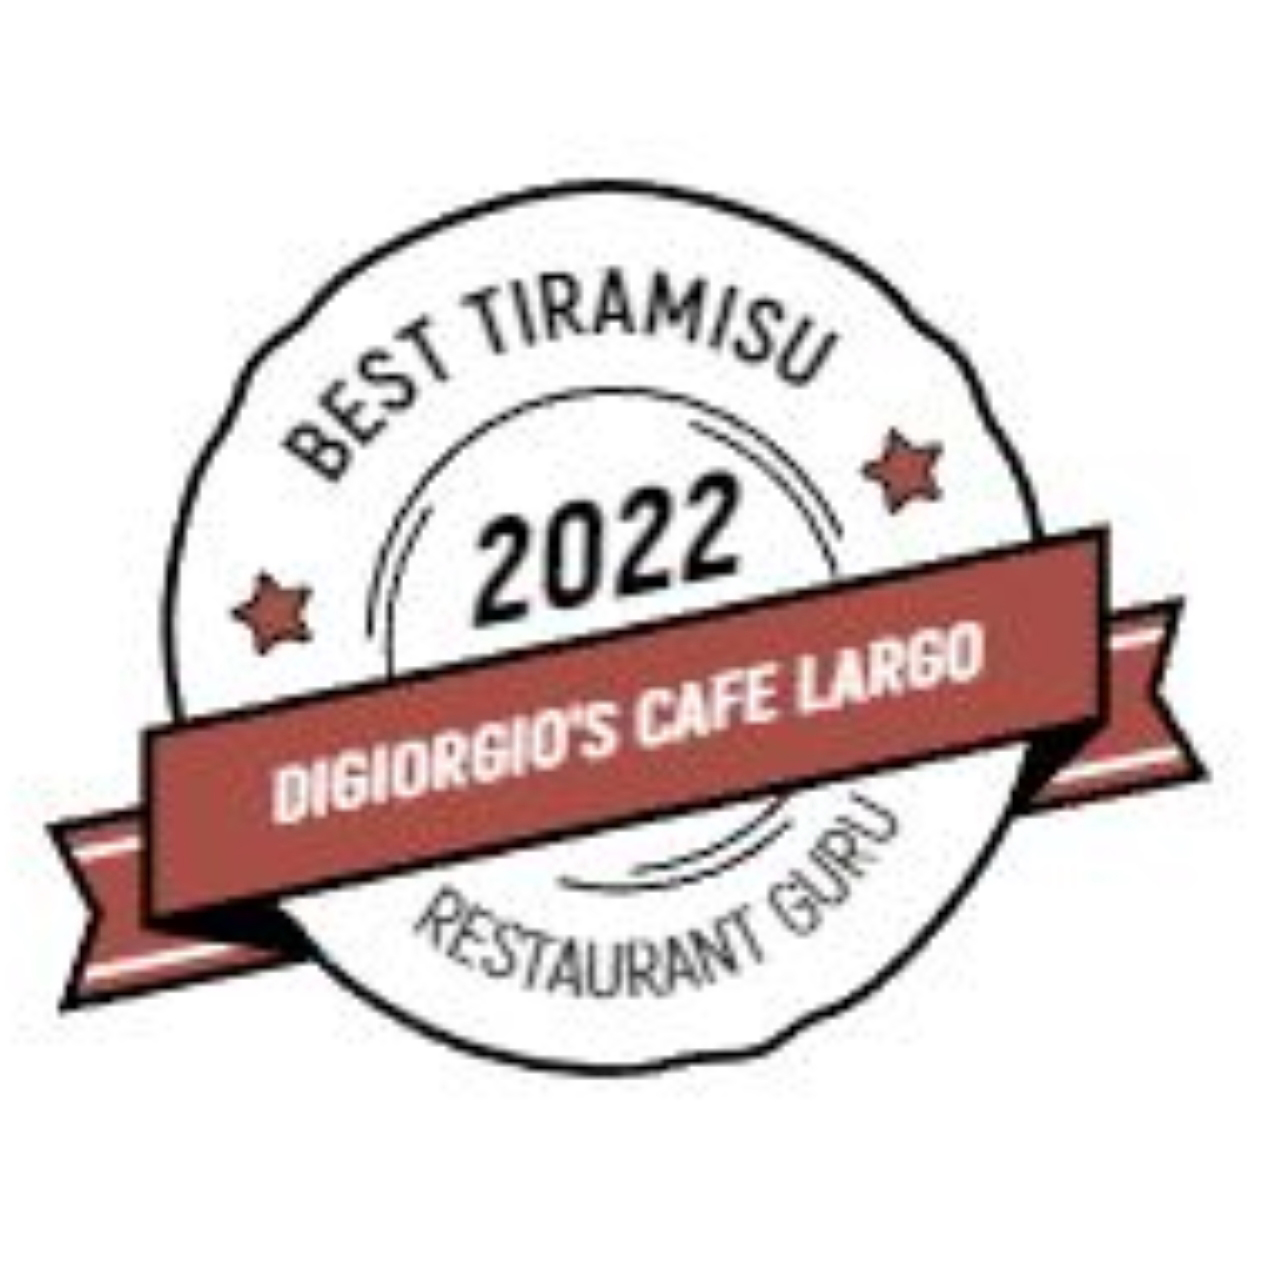 Restaurant Guru Award - Best Tiramisu 2022